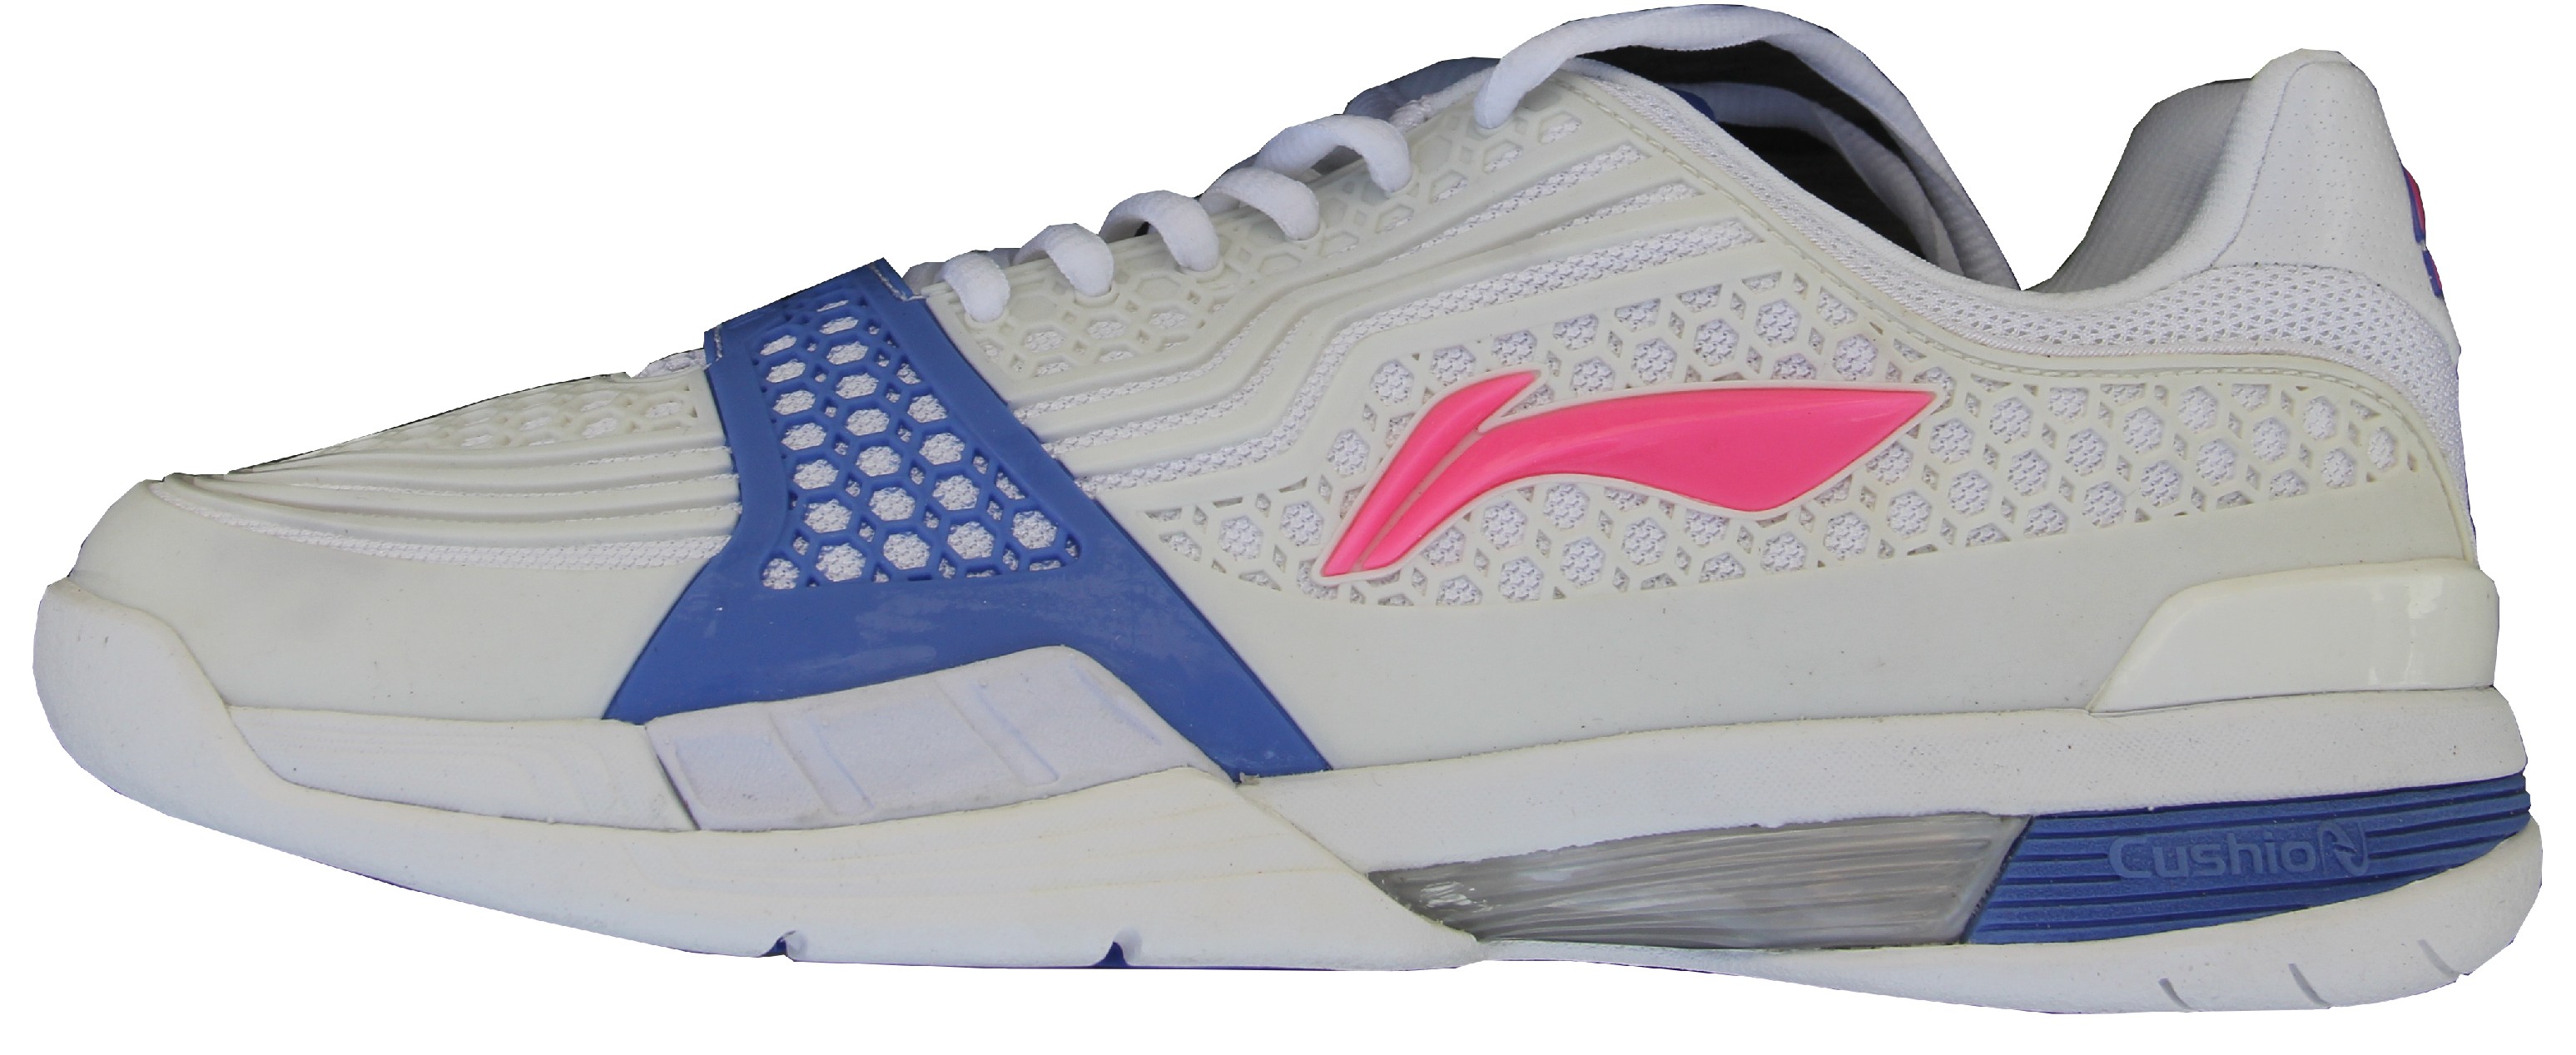 LI-NING PROFI, modrá, TOP tenisová obuv Velikost: 10 USm (EUR 43a2/3, délka stélky 275mm)